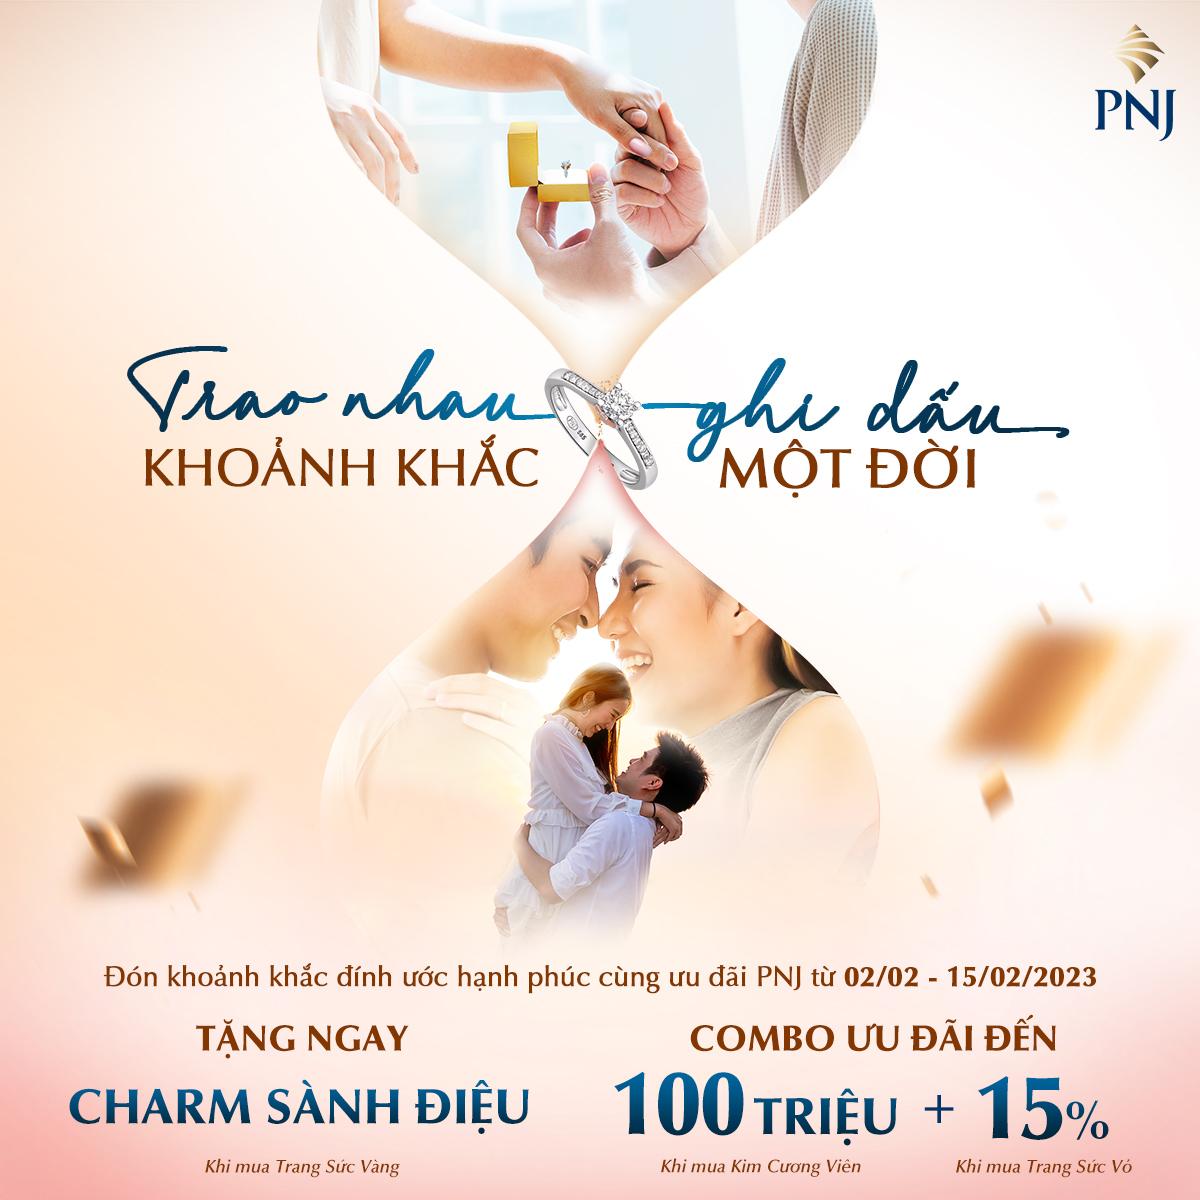 Valentine 2023: PNJ tặng 1000 cặp đôi vòng Charm sành điệu - Ảnh 1.